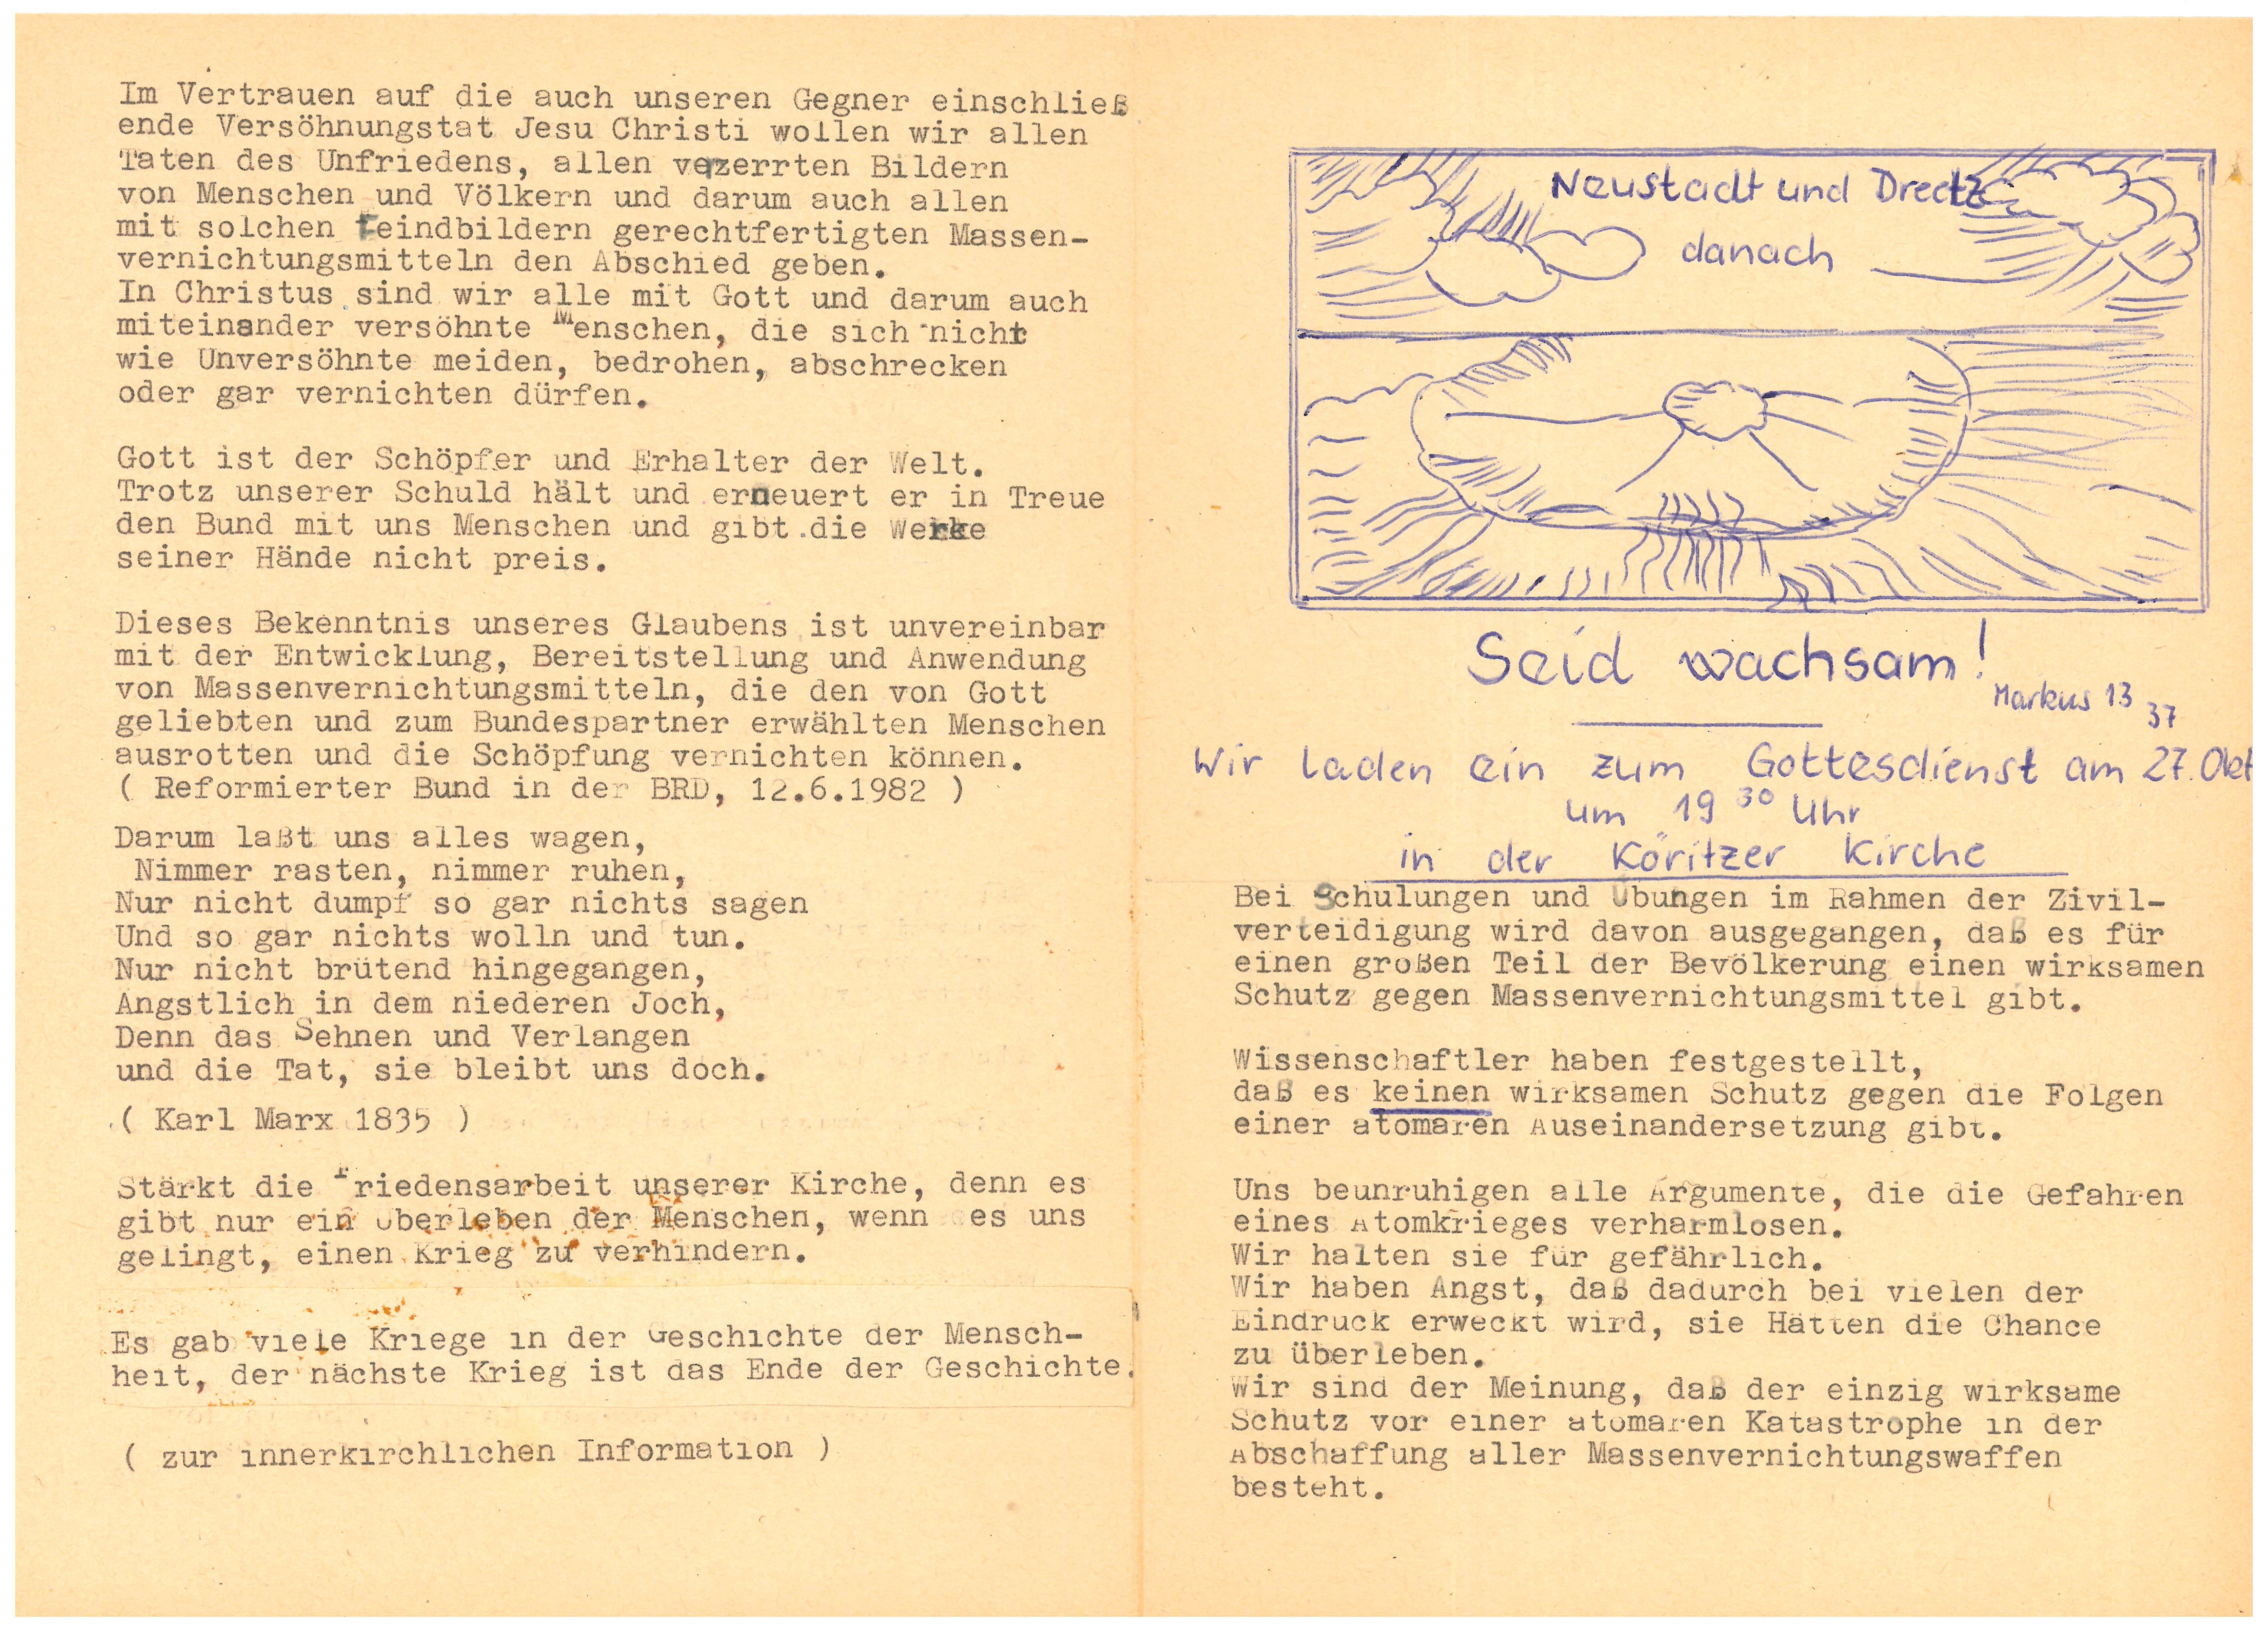 "Seid wachsam!": Einladung zum Gottesdienst am 27.10.1983 in der Köritzer Kirche (DDR Geschichtsmuseum im Dokumentationszentrum Perleberg CC BY-SA)